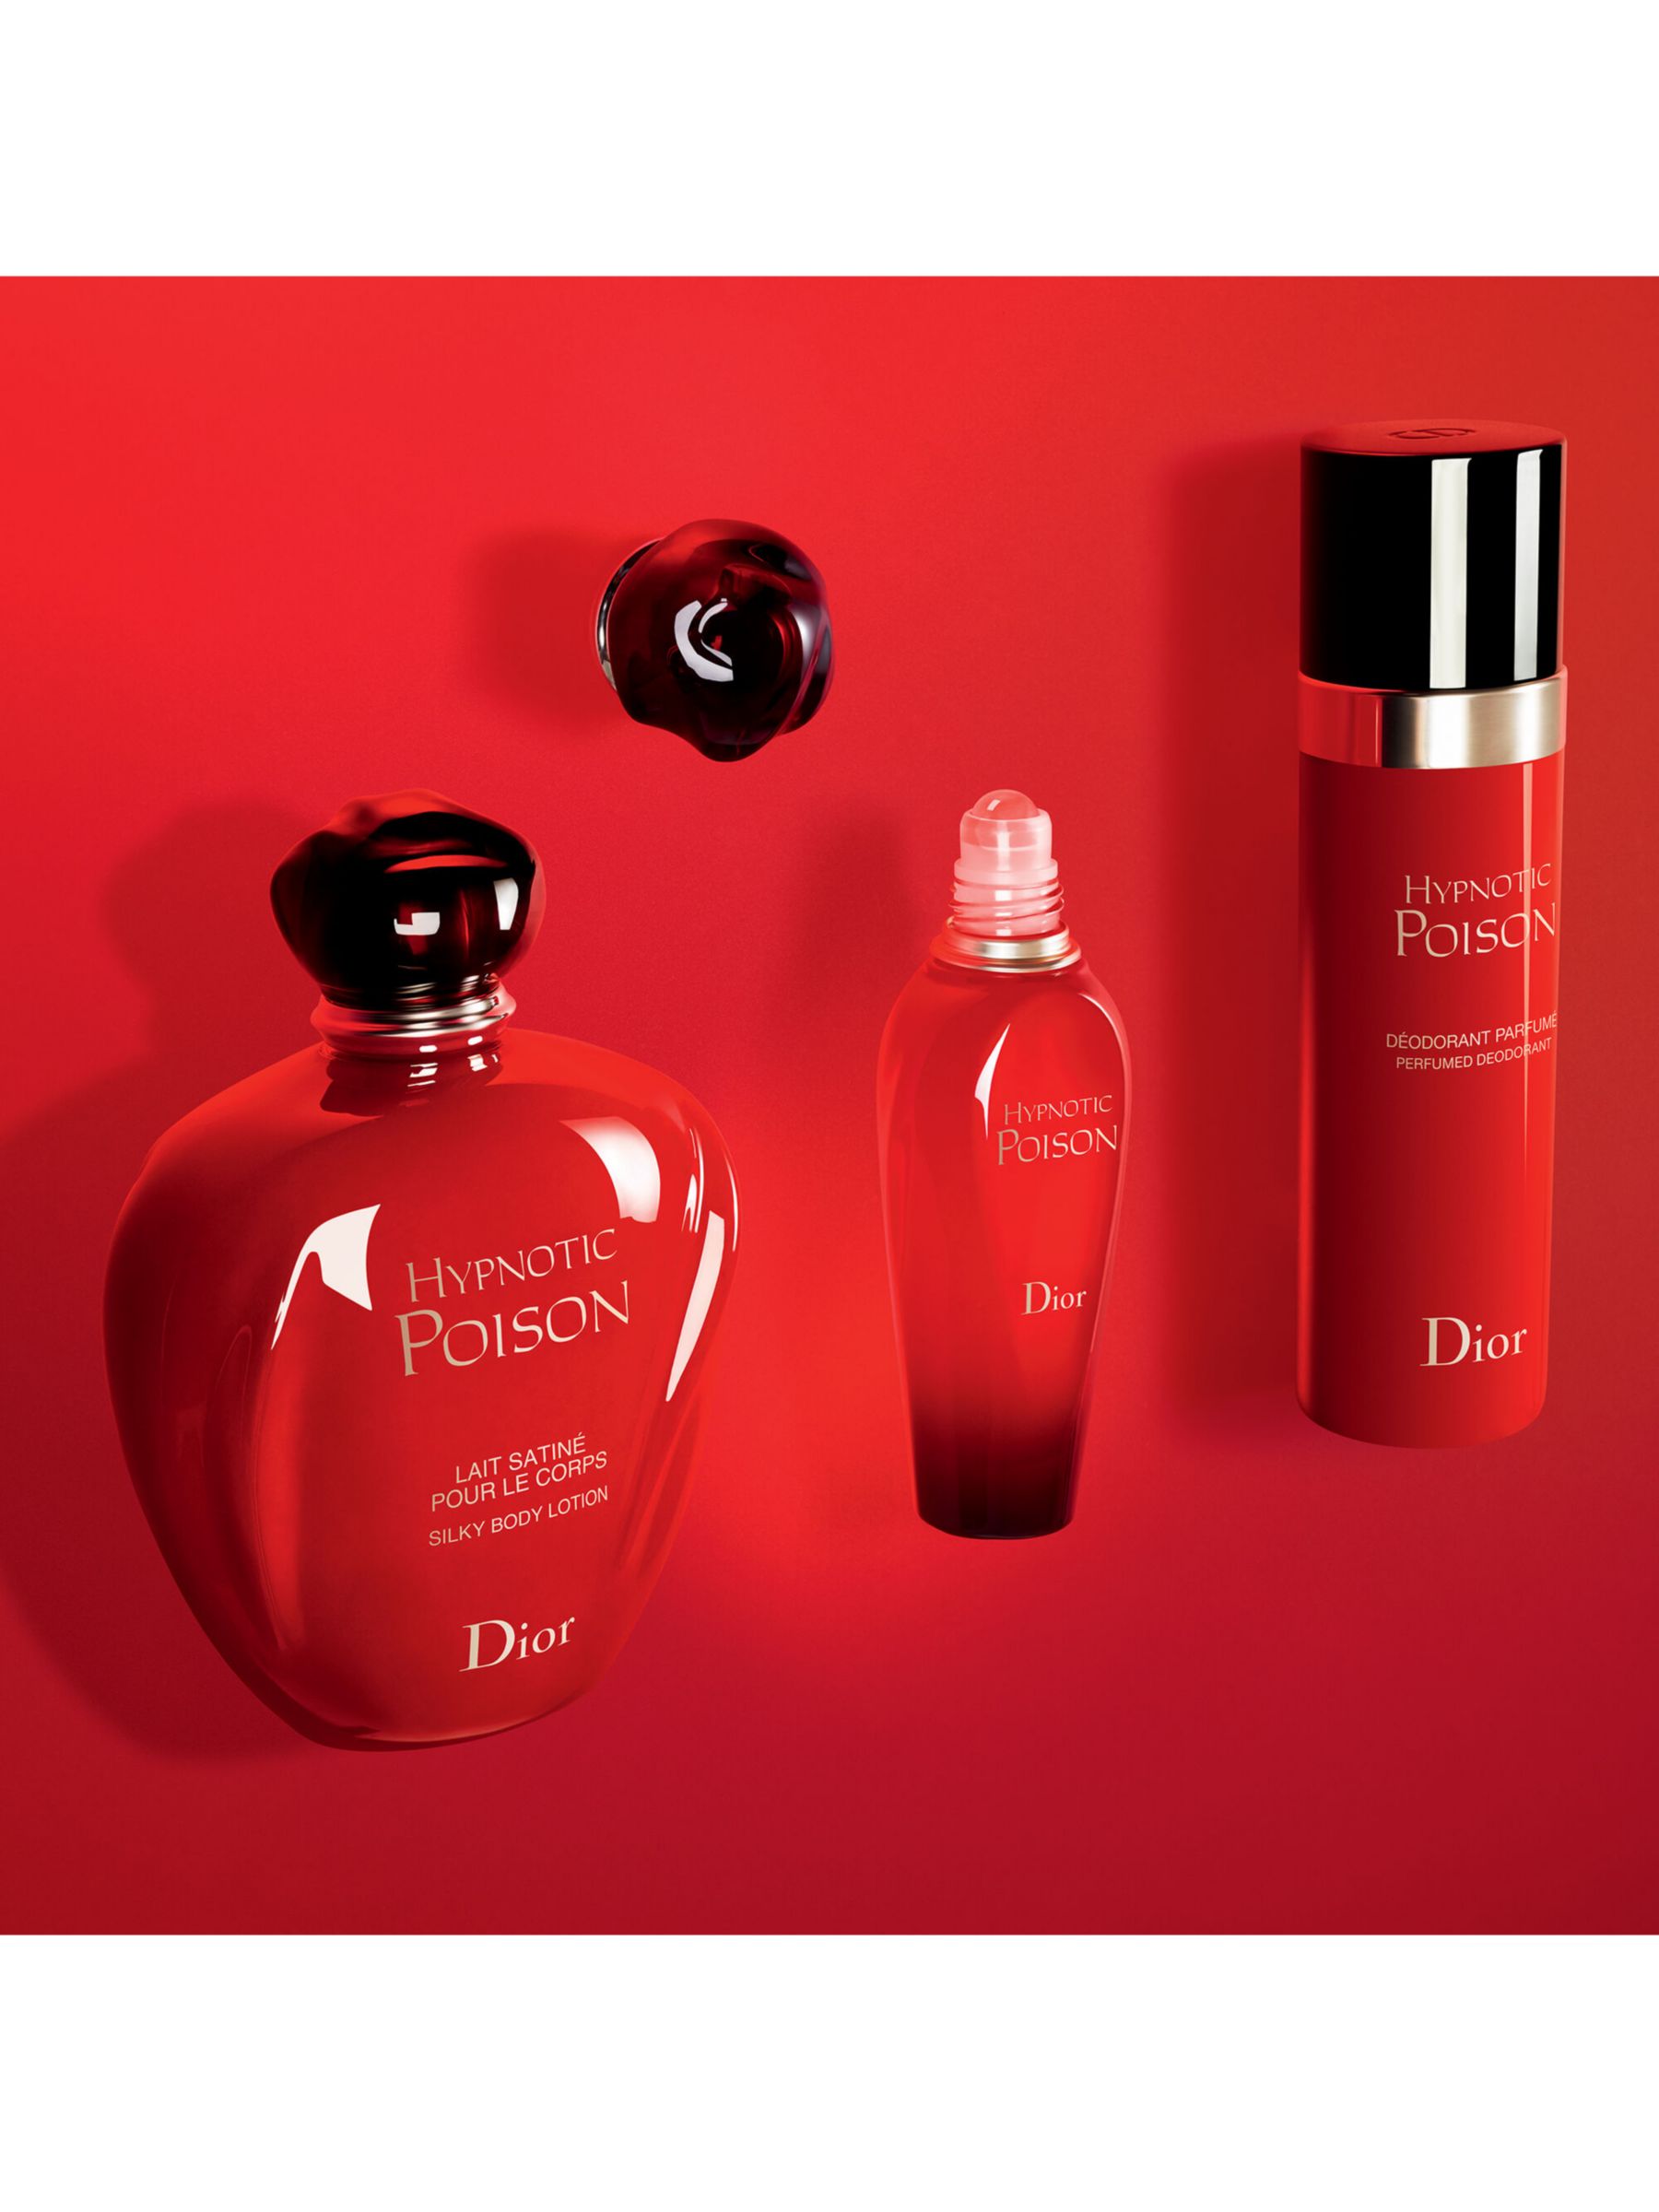 Dior Hypnotic Poison Eau De Toilette Spray At John Lewis Partners